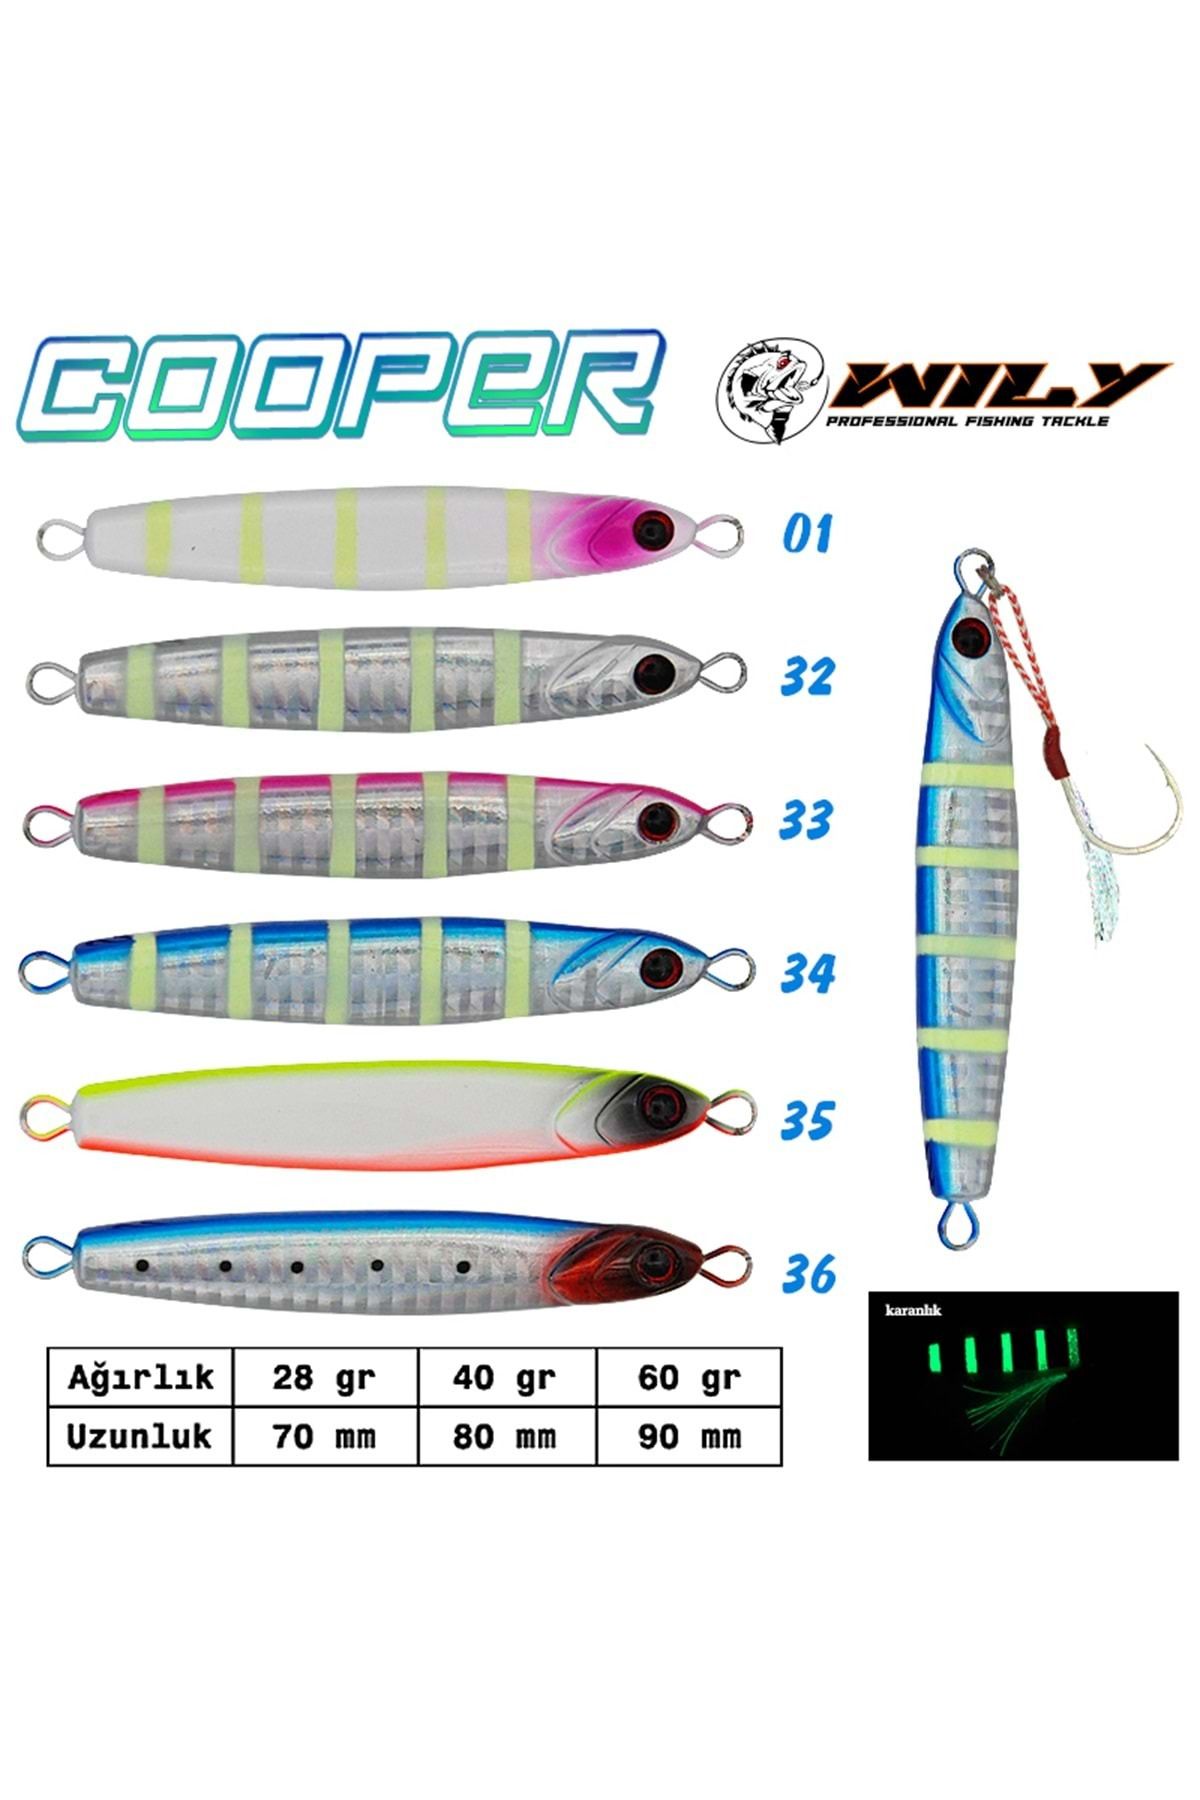 Wily Cooper Jig 40 gr 90 mm 01